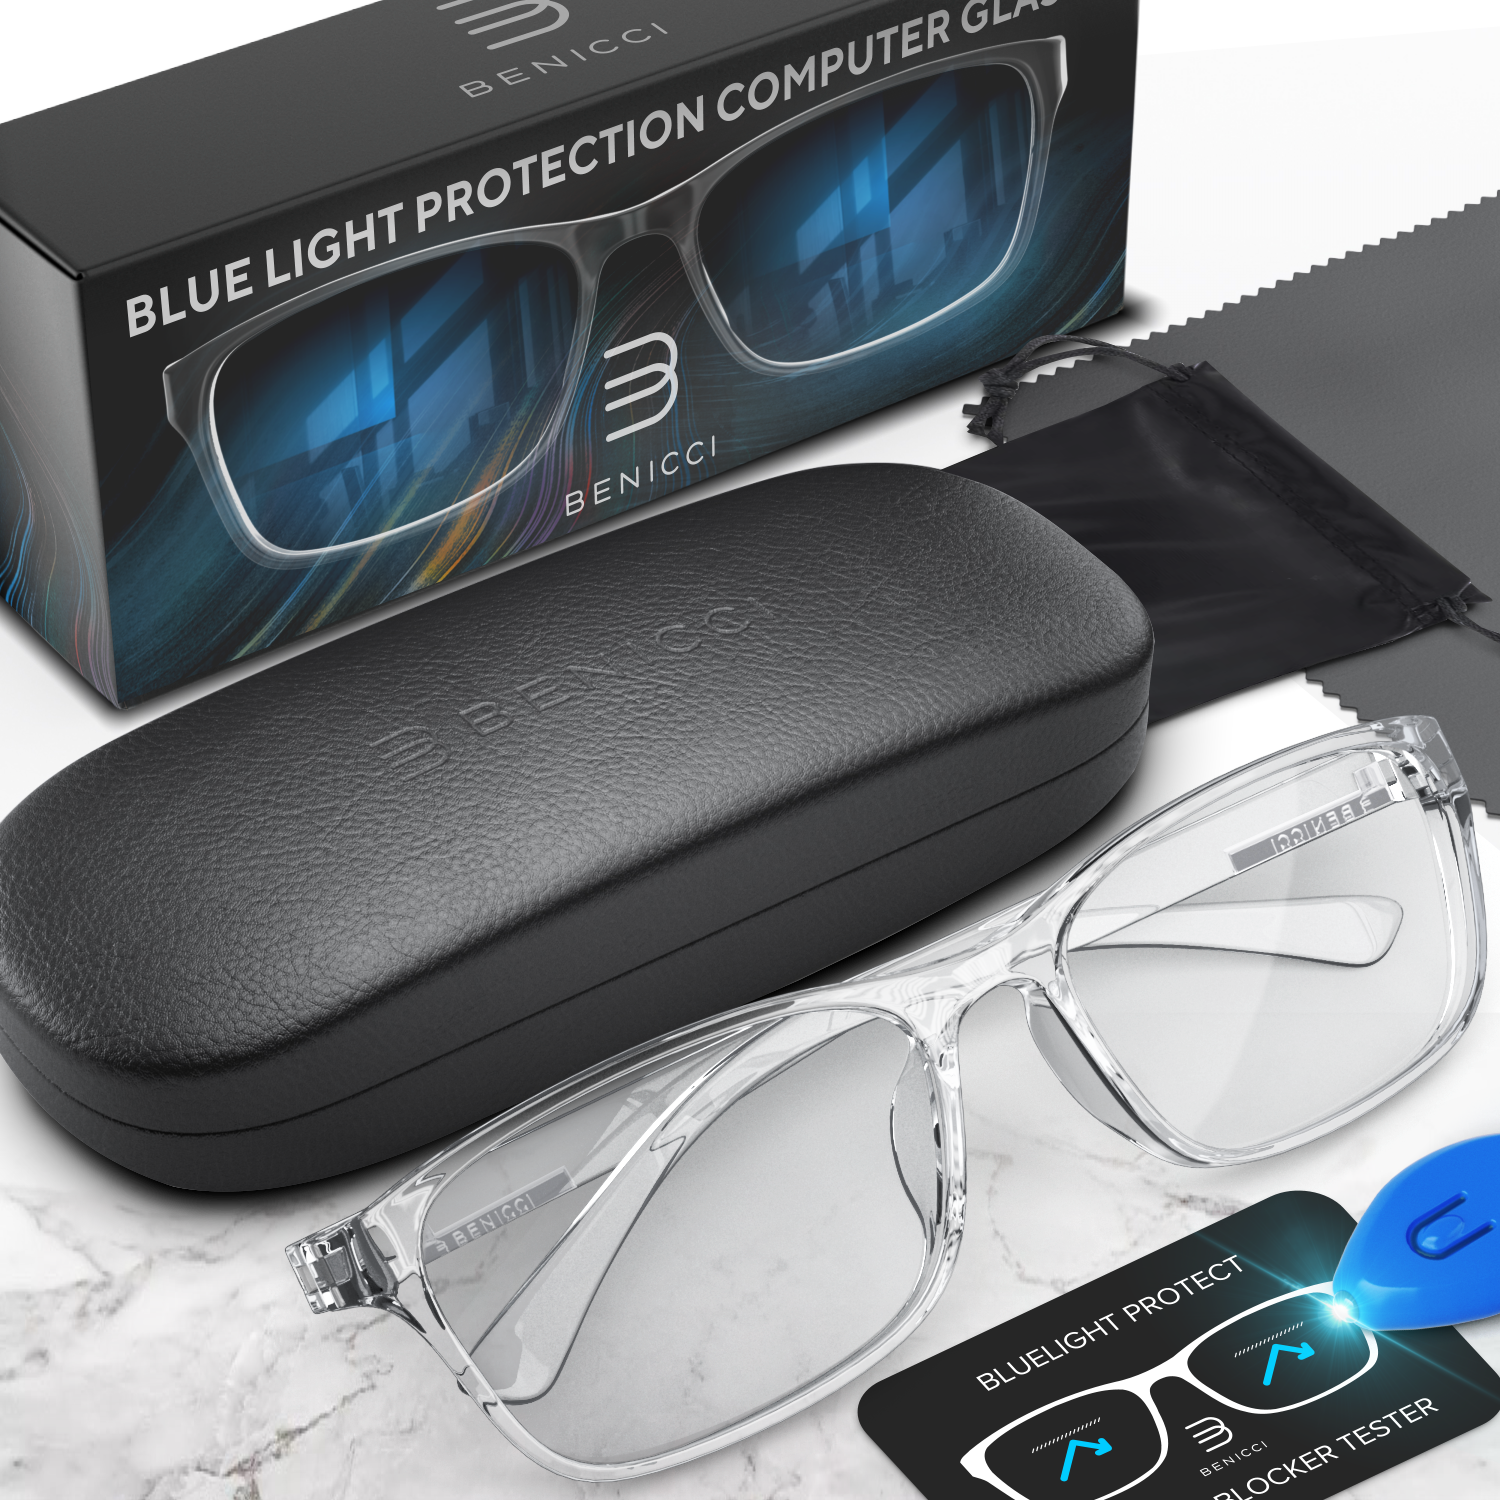 Women's Blue Light Glasses - Computer Glasses